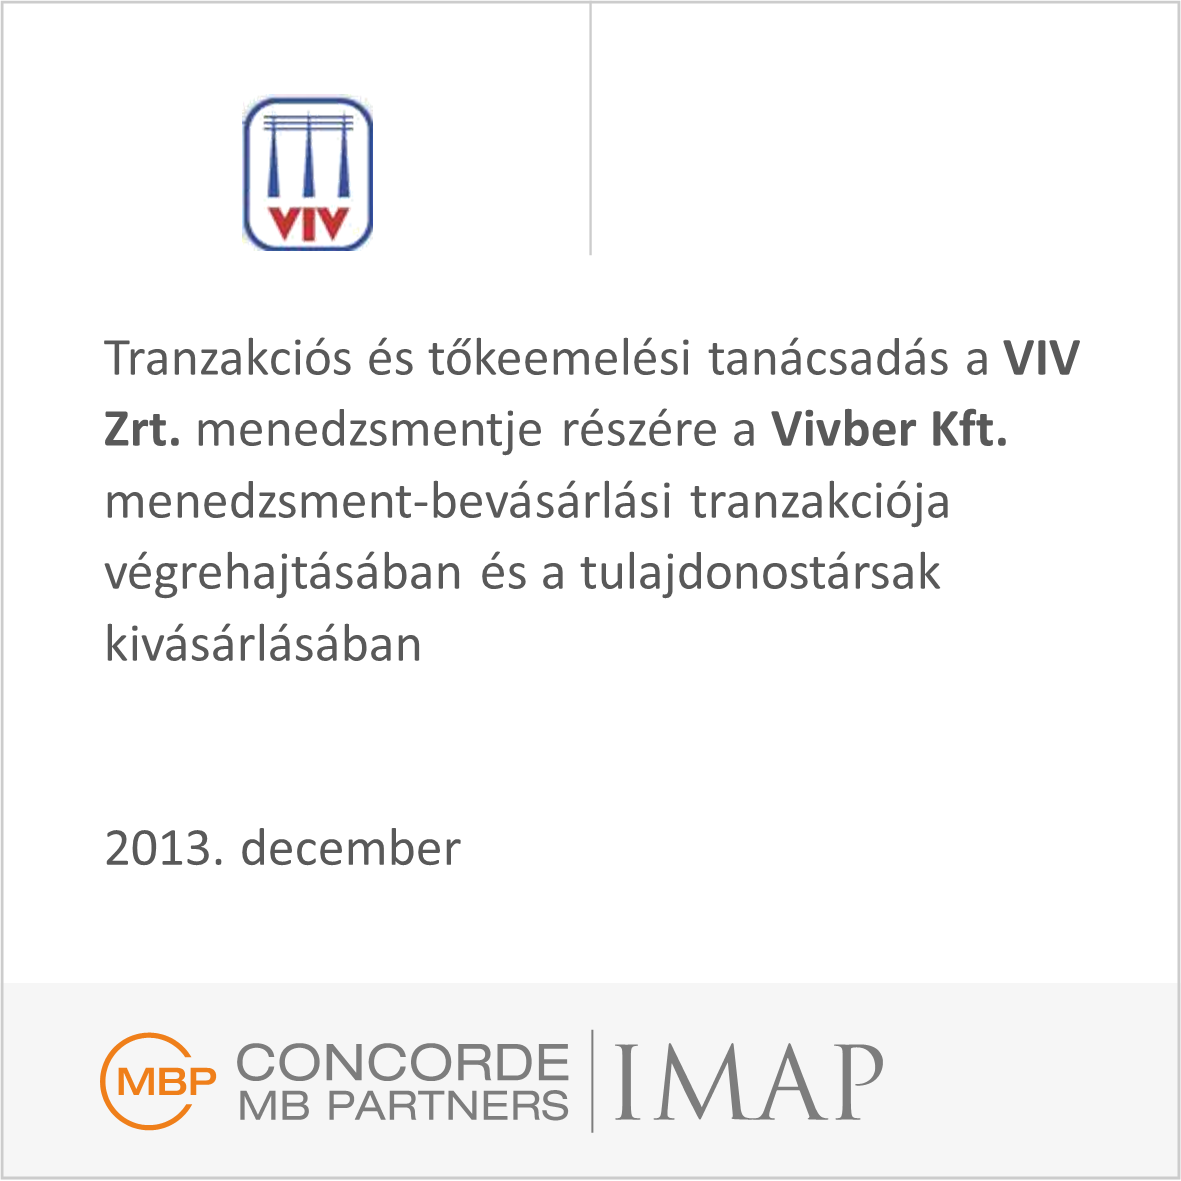 Tranzakciós és tőkeemelési tanácsadás a VIV Zrt. részére